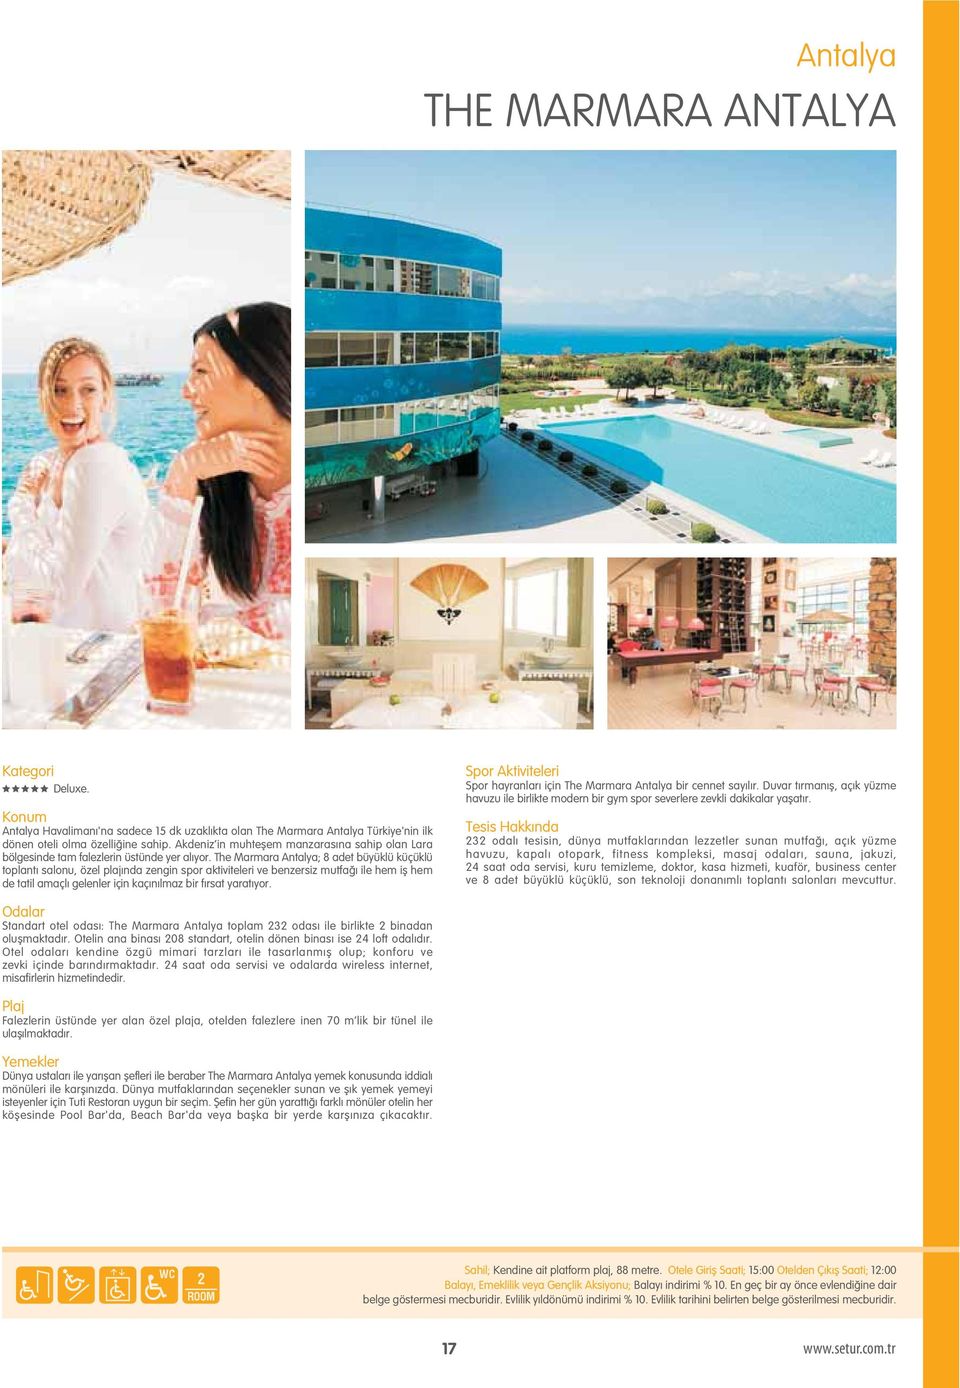 The Marmara Antalya; 8 adet büyüklü küçüklü toplantı salonu, özel plajında zengin spor aktiviteleri ve benzersiz mutfa ı ile hem ifl hem de tatil amaçlı gelenler için kaçınılmaz bir fırsat yaratıyor.